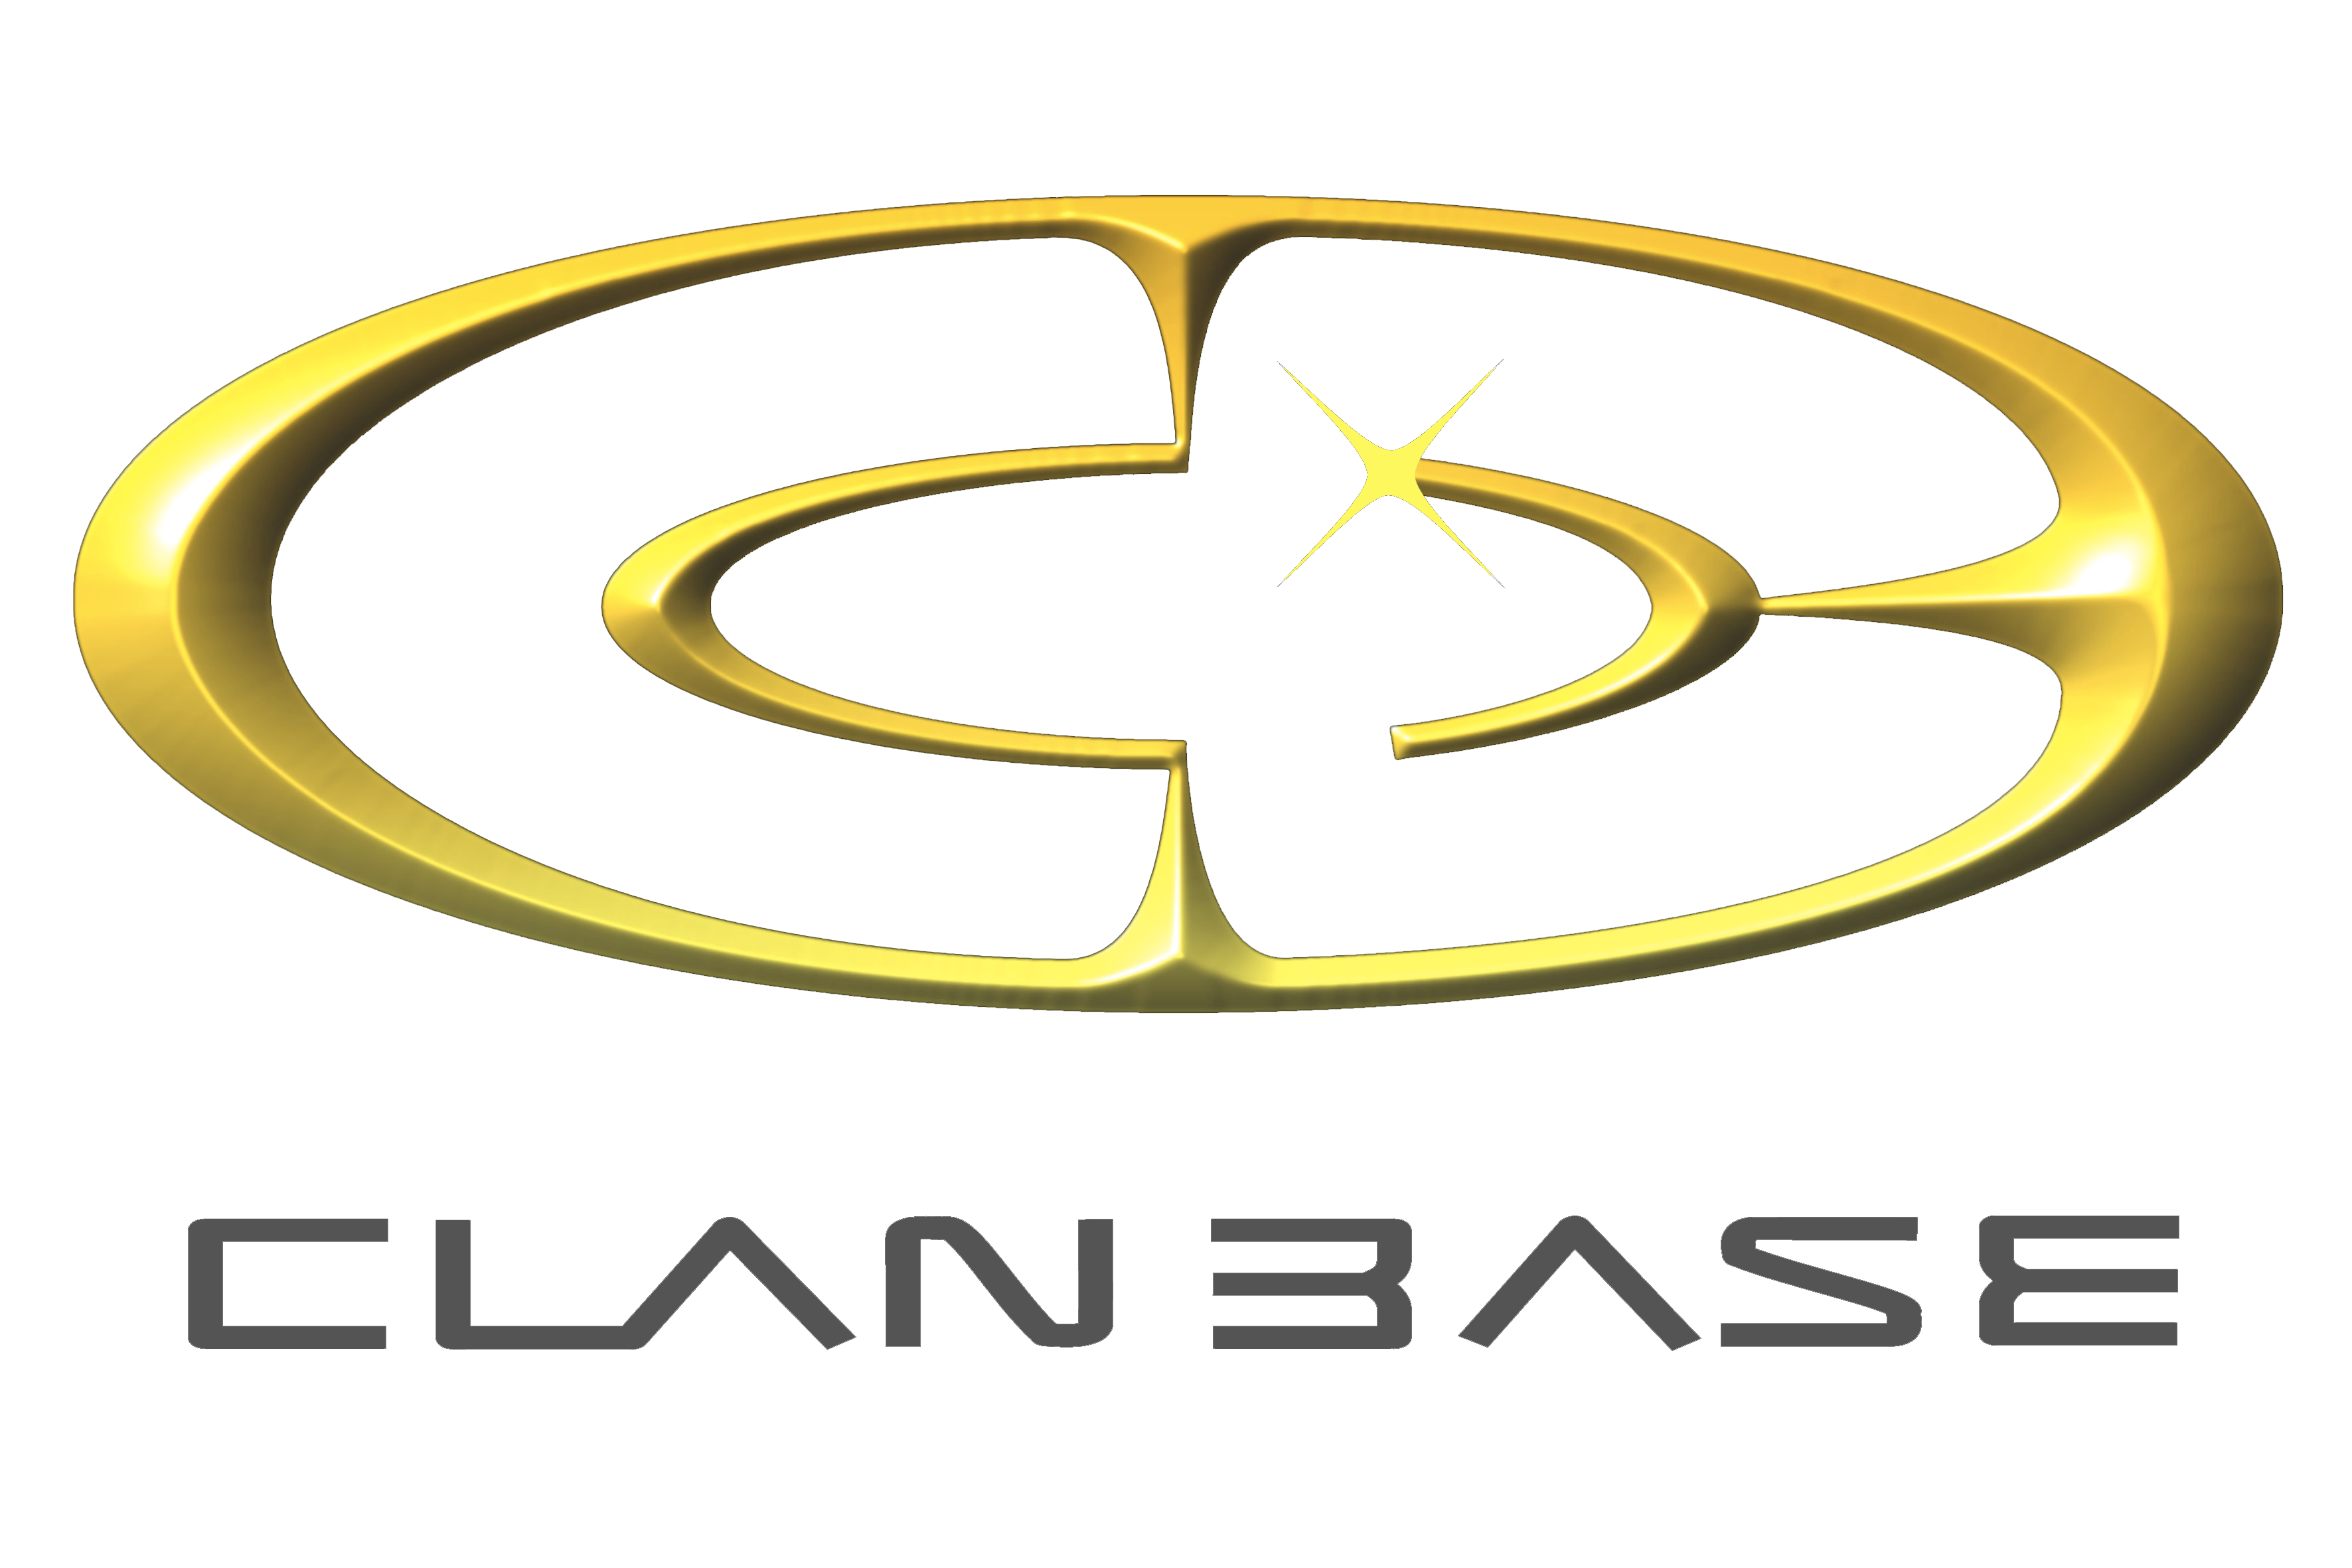 clanbase1-cs